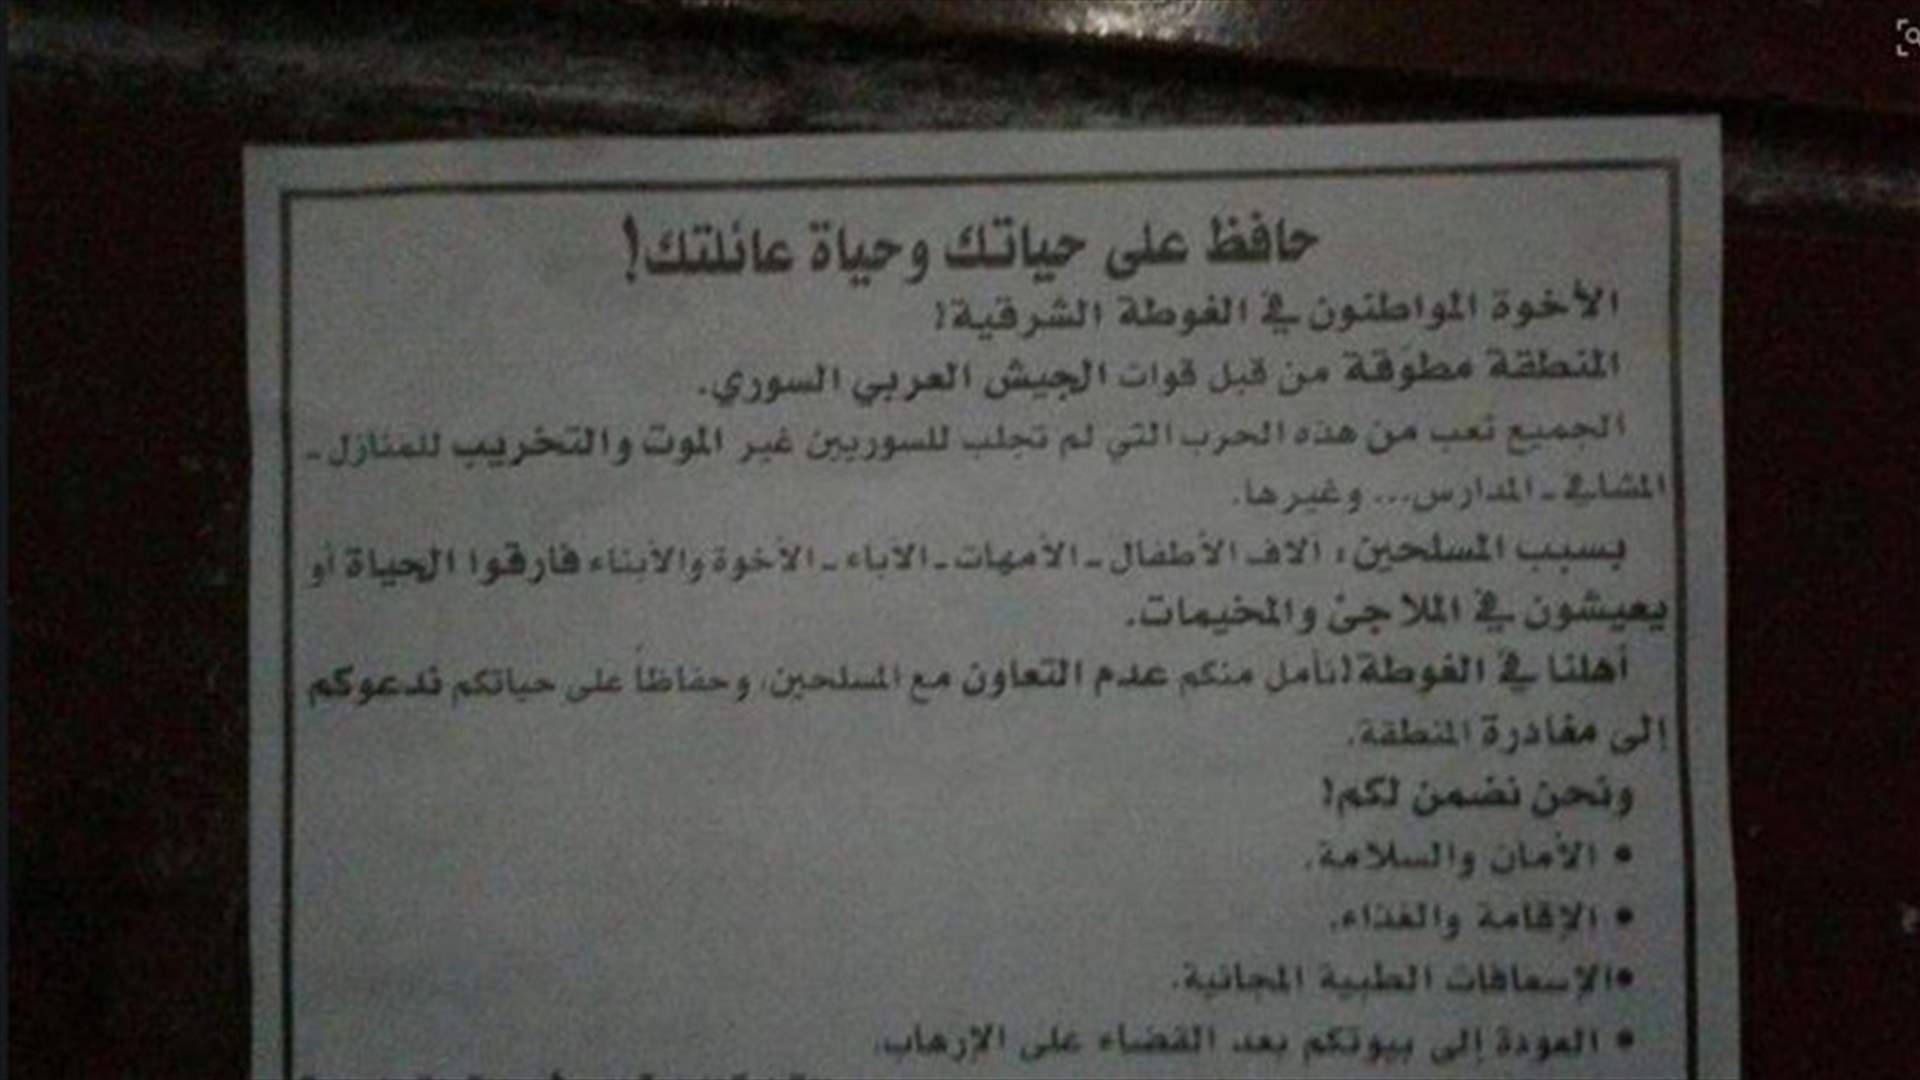 بالصور - مروحيات الجيش السوري تلقي منشورات على الغوطة الشرقية